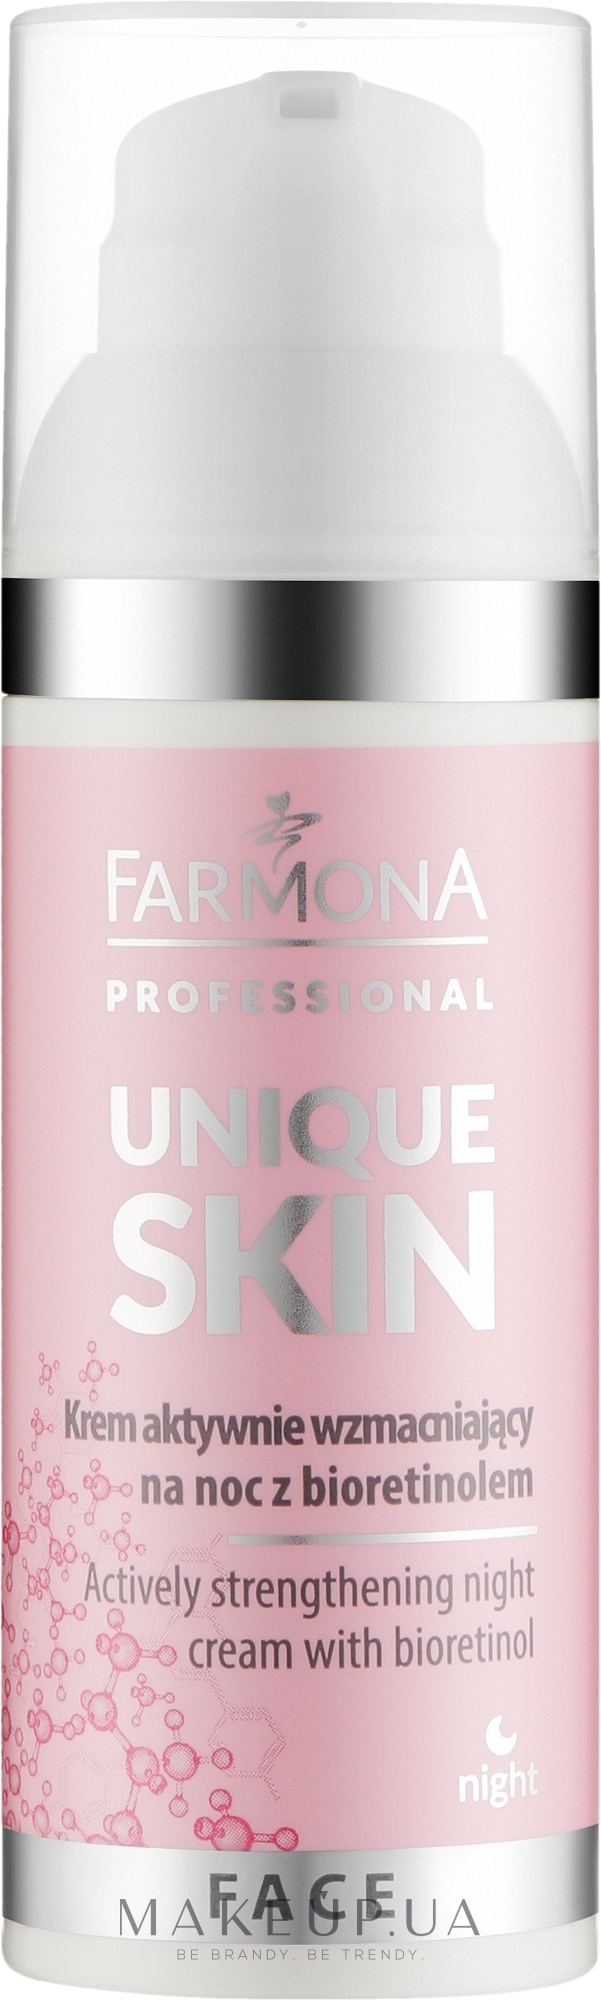 Активний зміцнювальний нічний крем з біоретинолом - Farmona Professional Unique Skin Actively Strengthening Night Cream With Bioretinol — фото 50ml